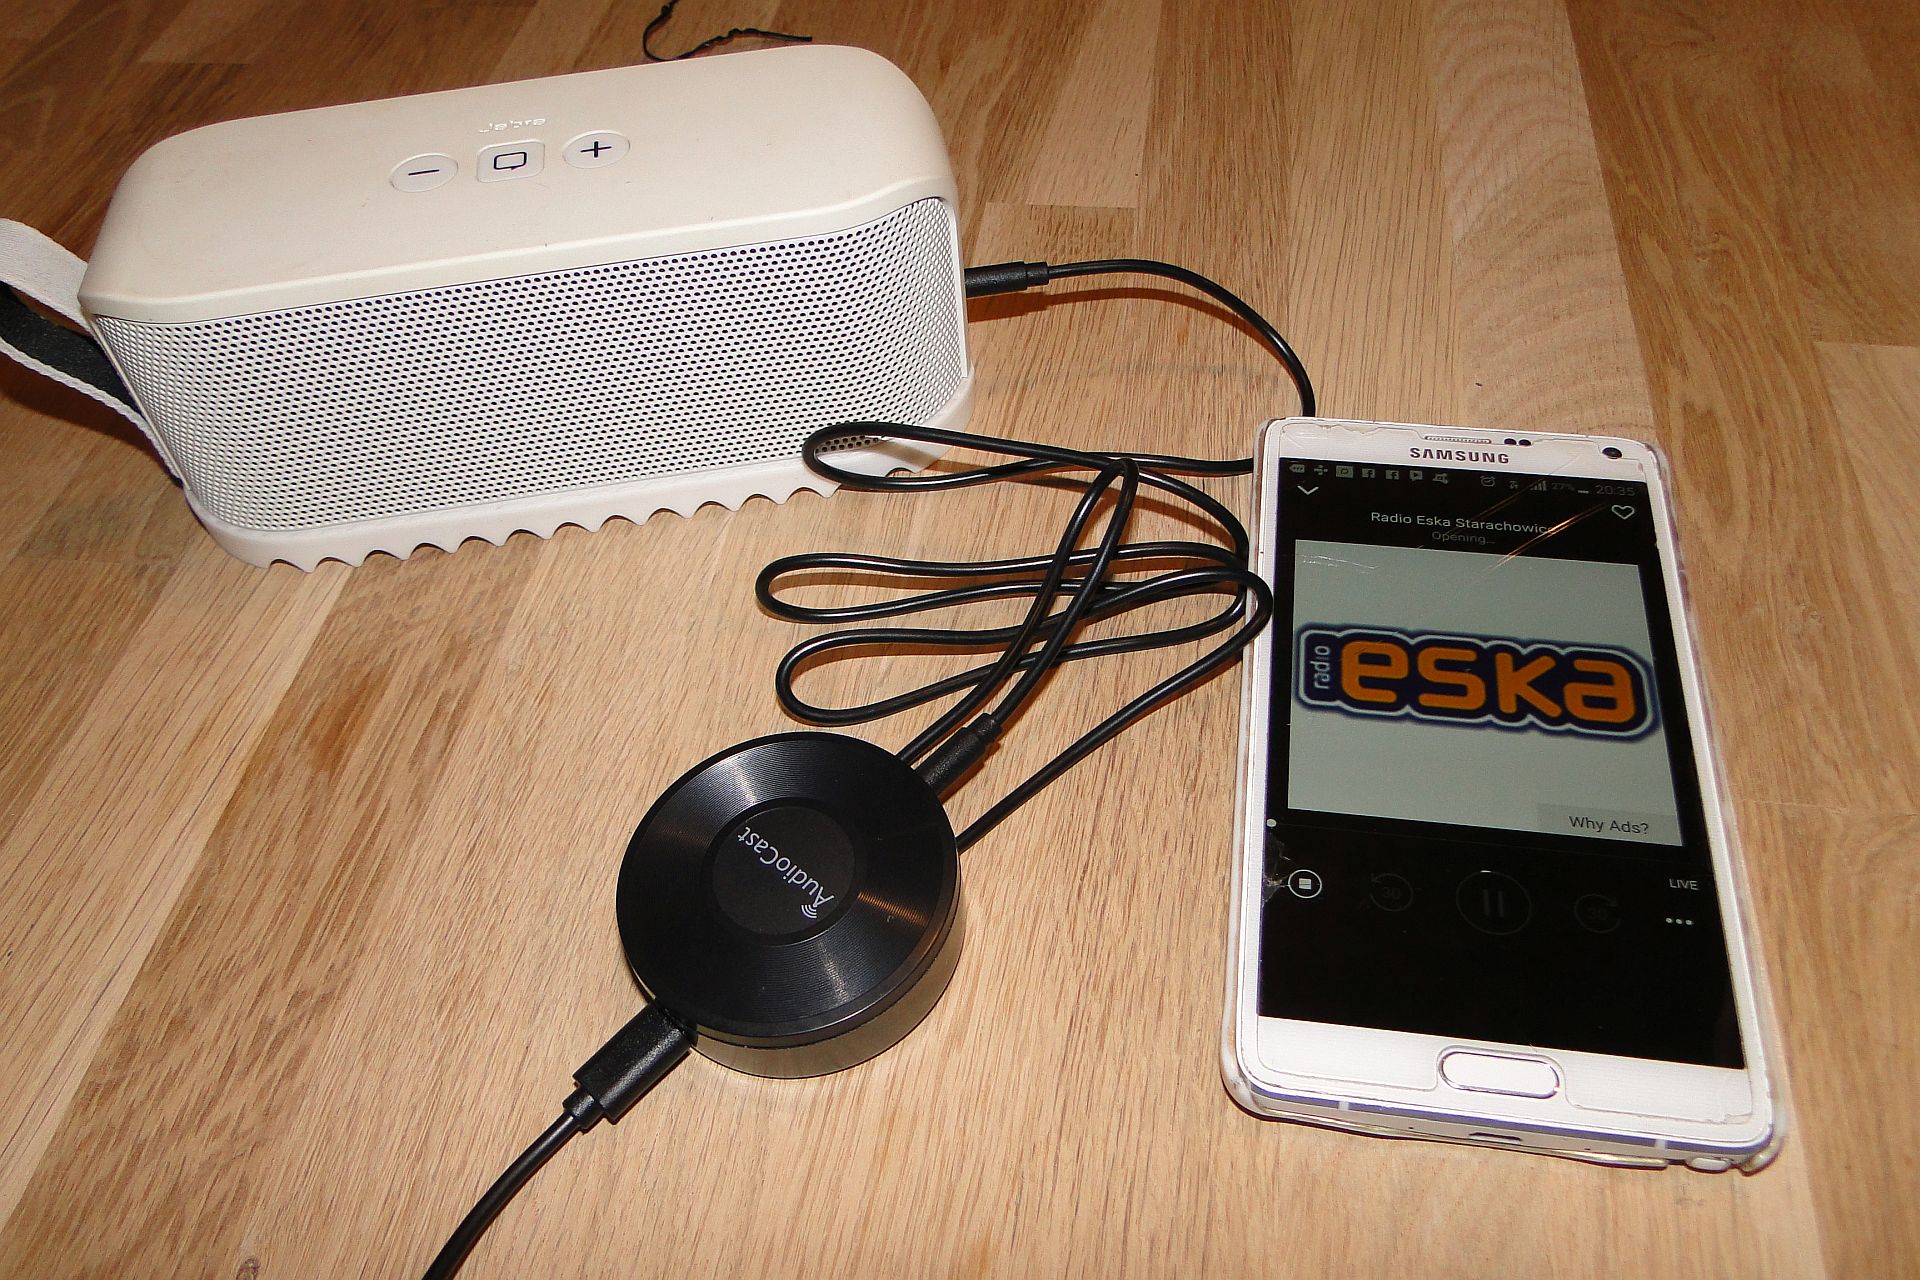 AudioCast M5 - transmiter dźwięku - test